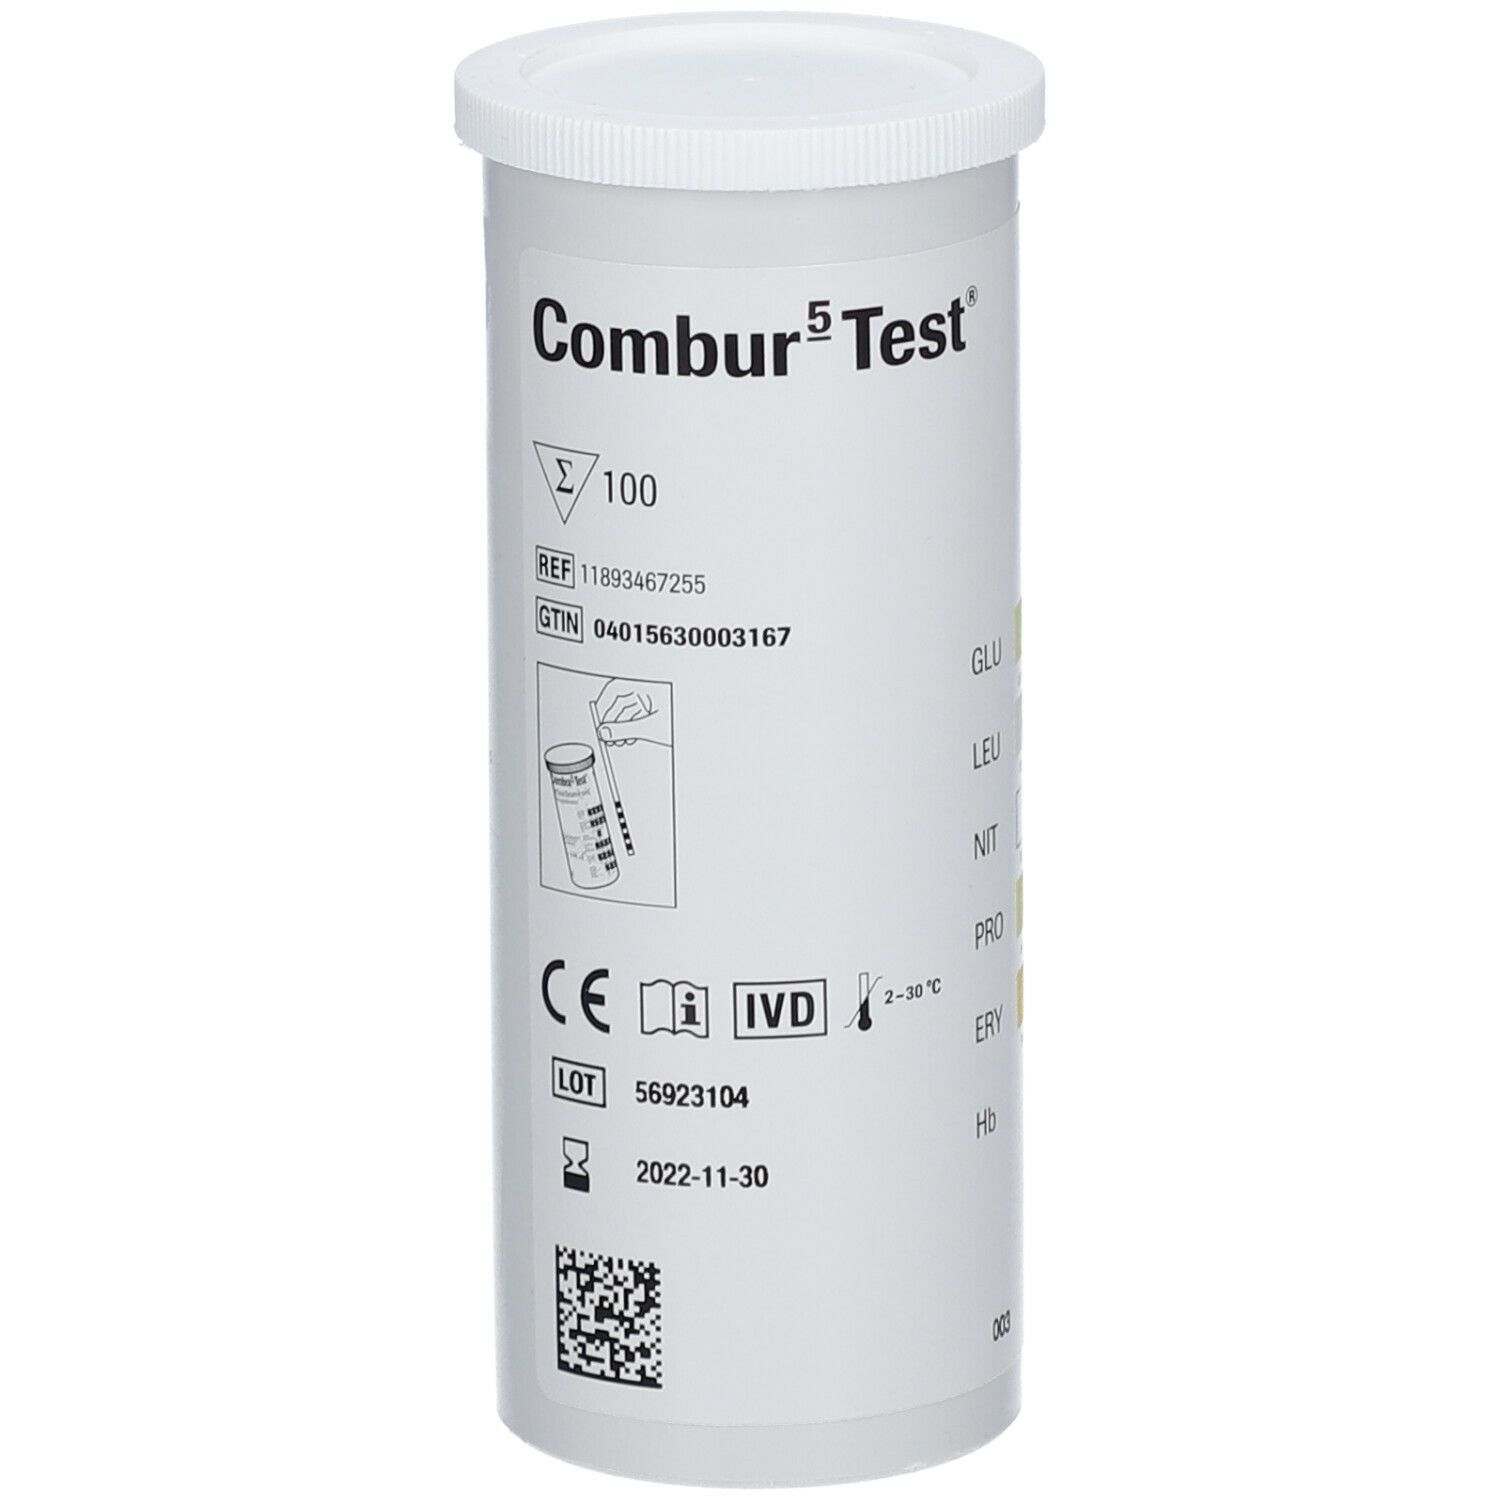 Combur 5 Test